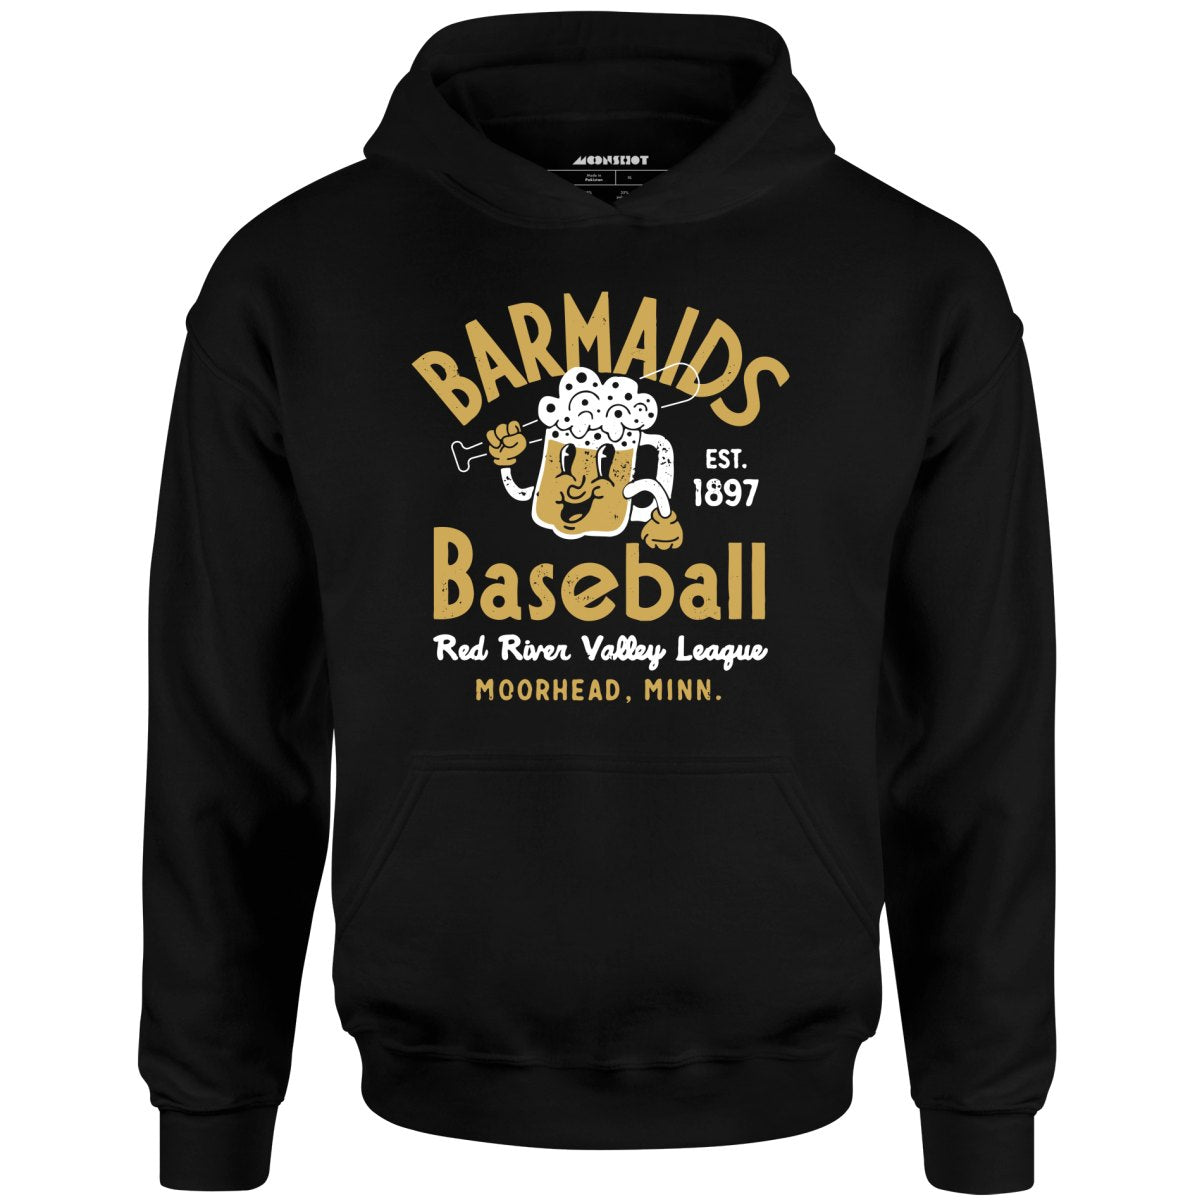 Moorhead Barmaids - Minnesota - Vintage Defunct Baseball Teams - Unisex Hoodie